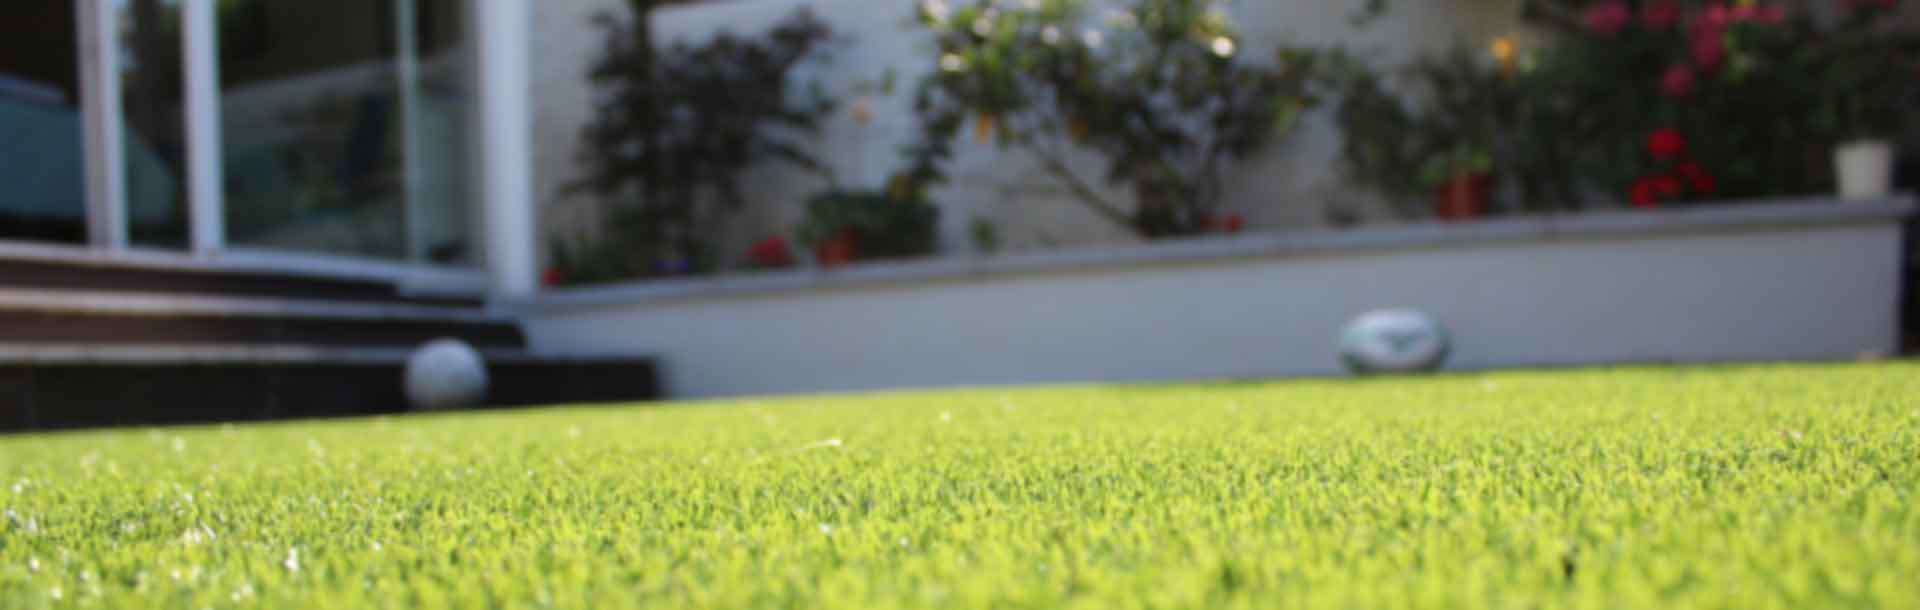 Cómo elegir el mejor césped artificial para tu jardín - Foto 1